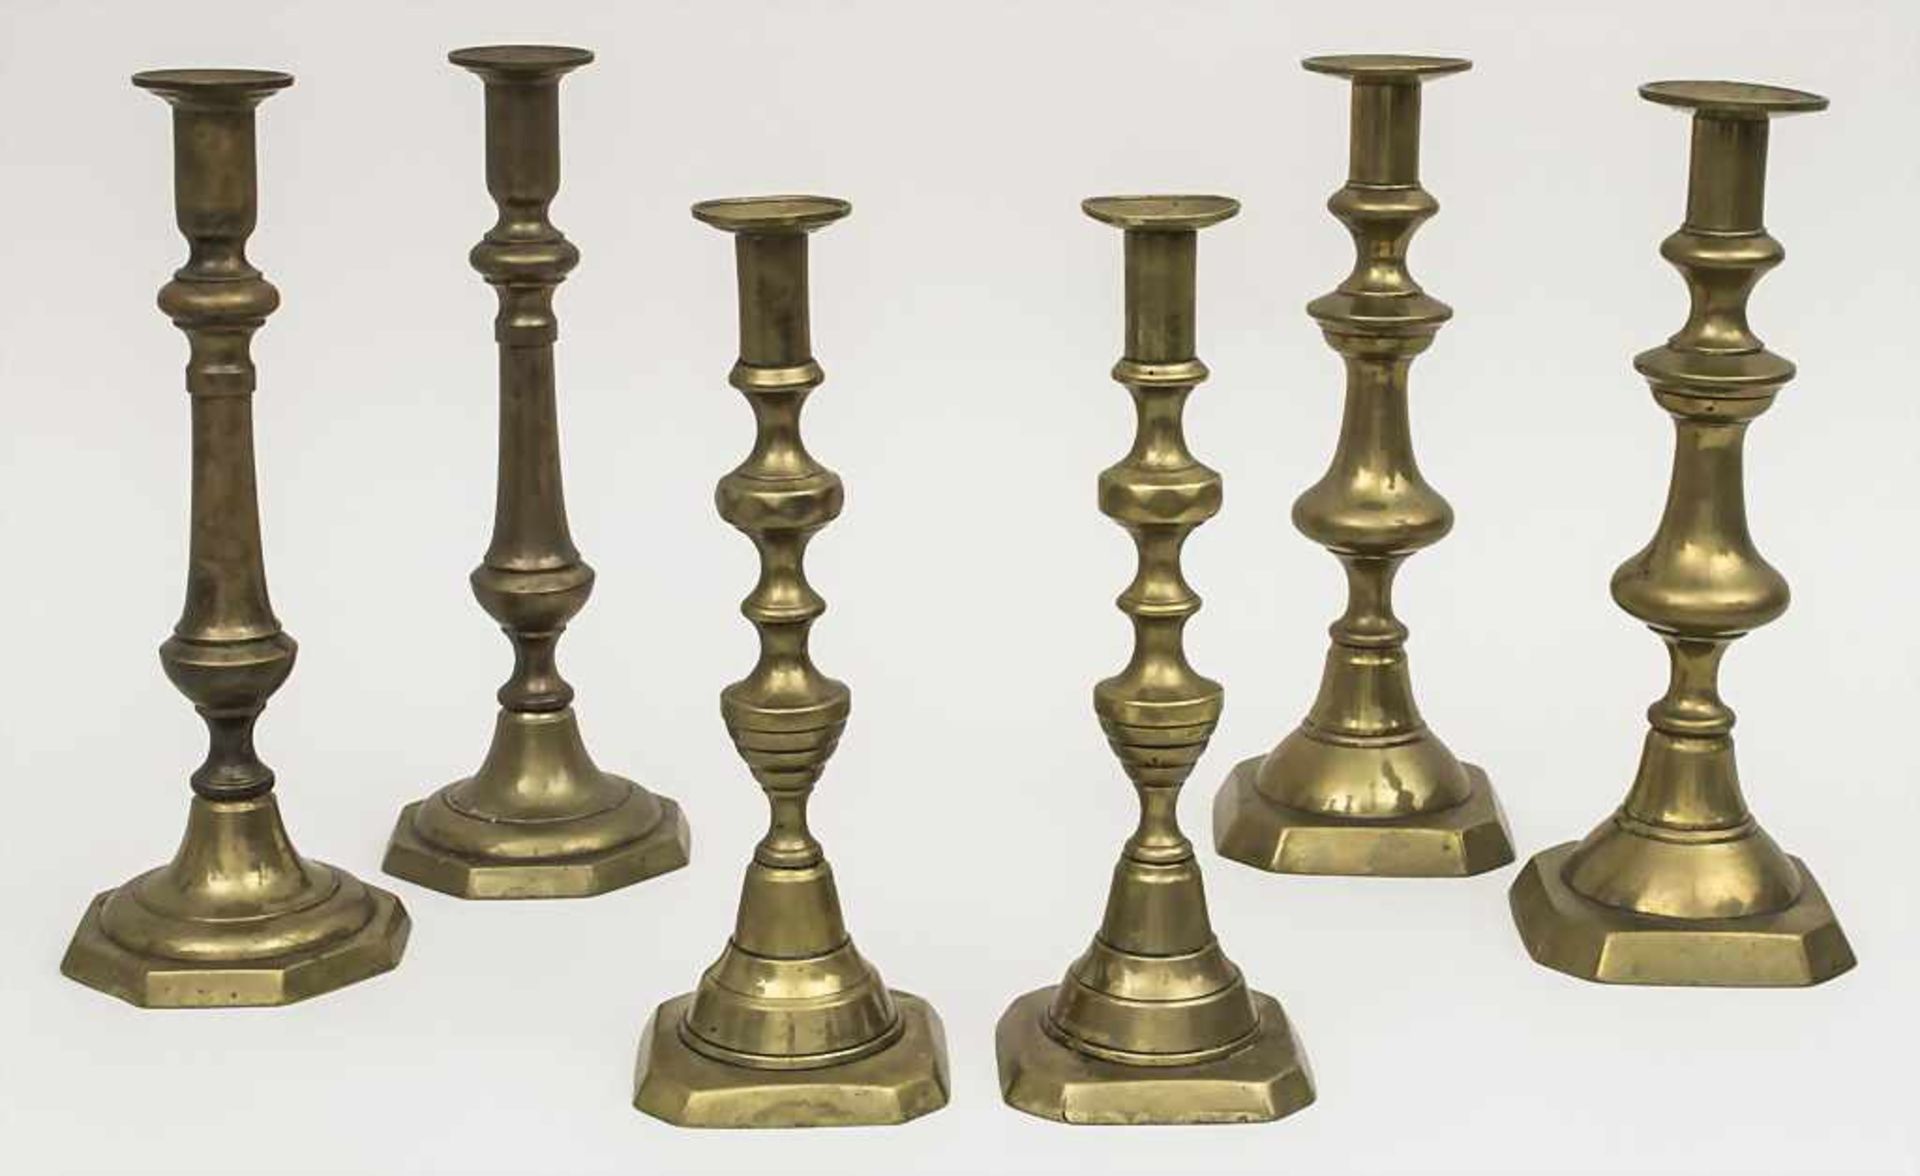 3 Paar Kerzenleuchter / 3 pairs of candlesticks, 20. Jh. Material: Messing, Höhen: 27,5 - 30,5 cm,